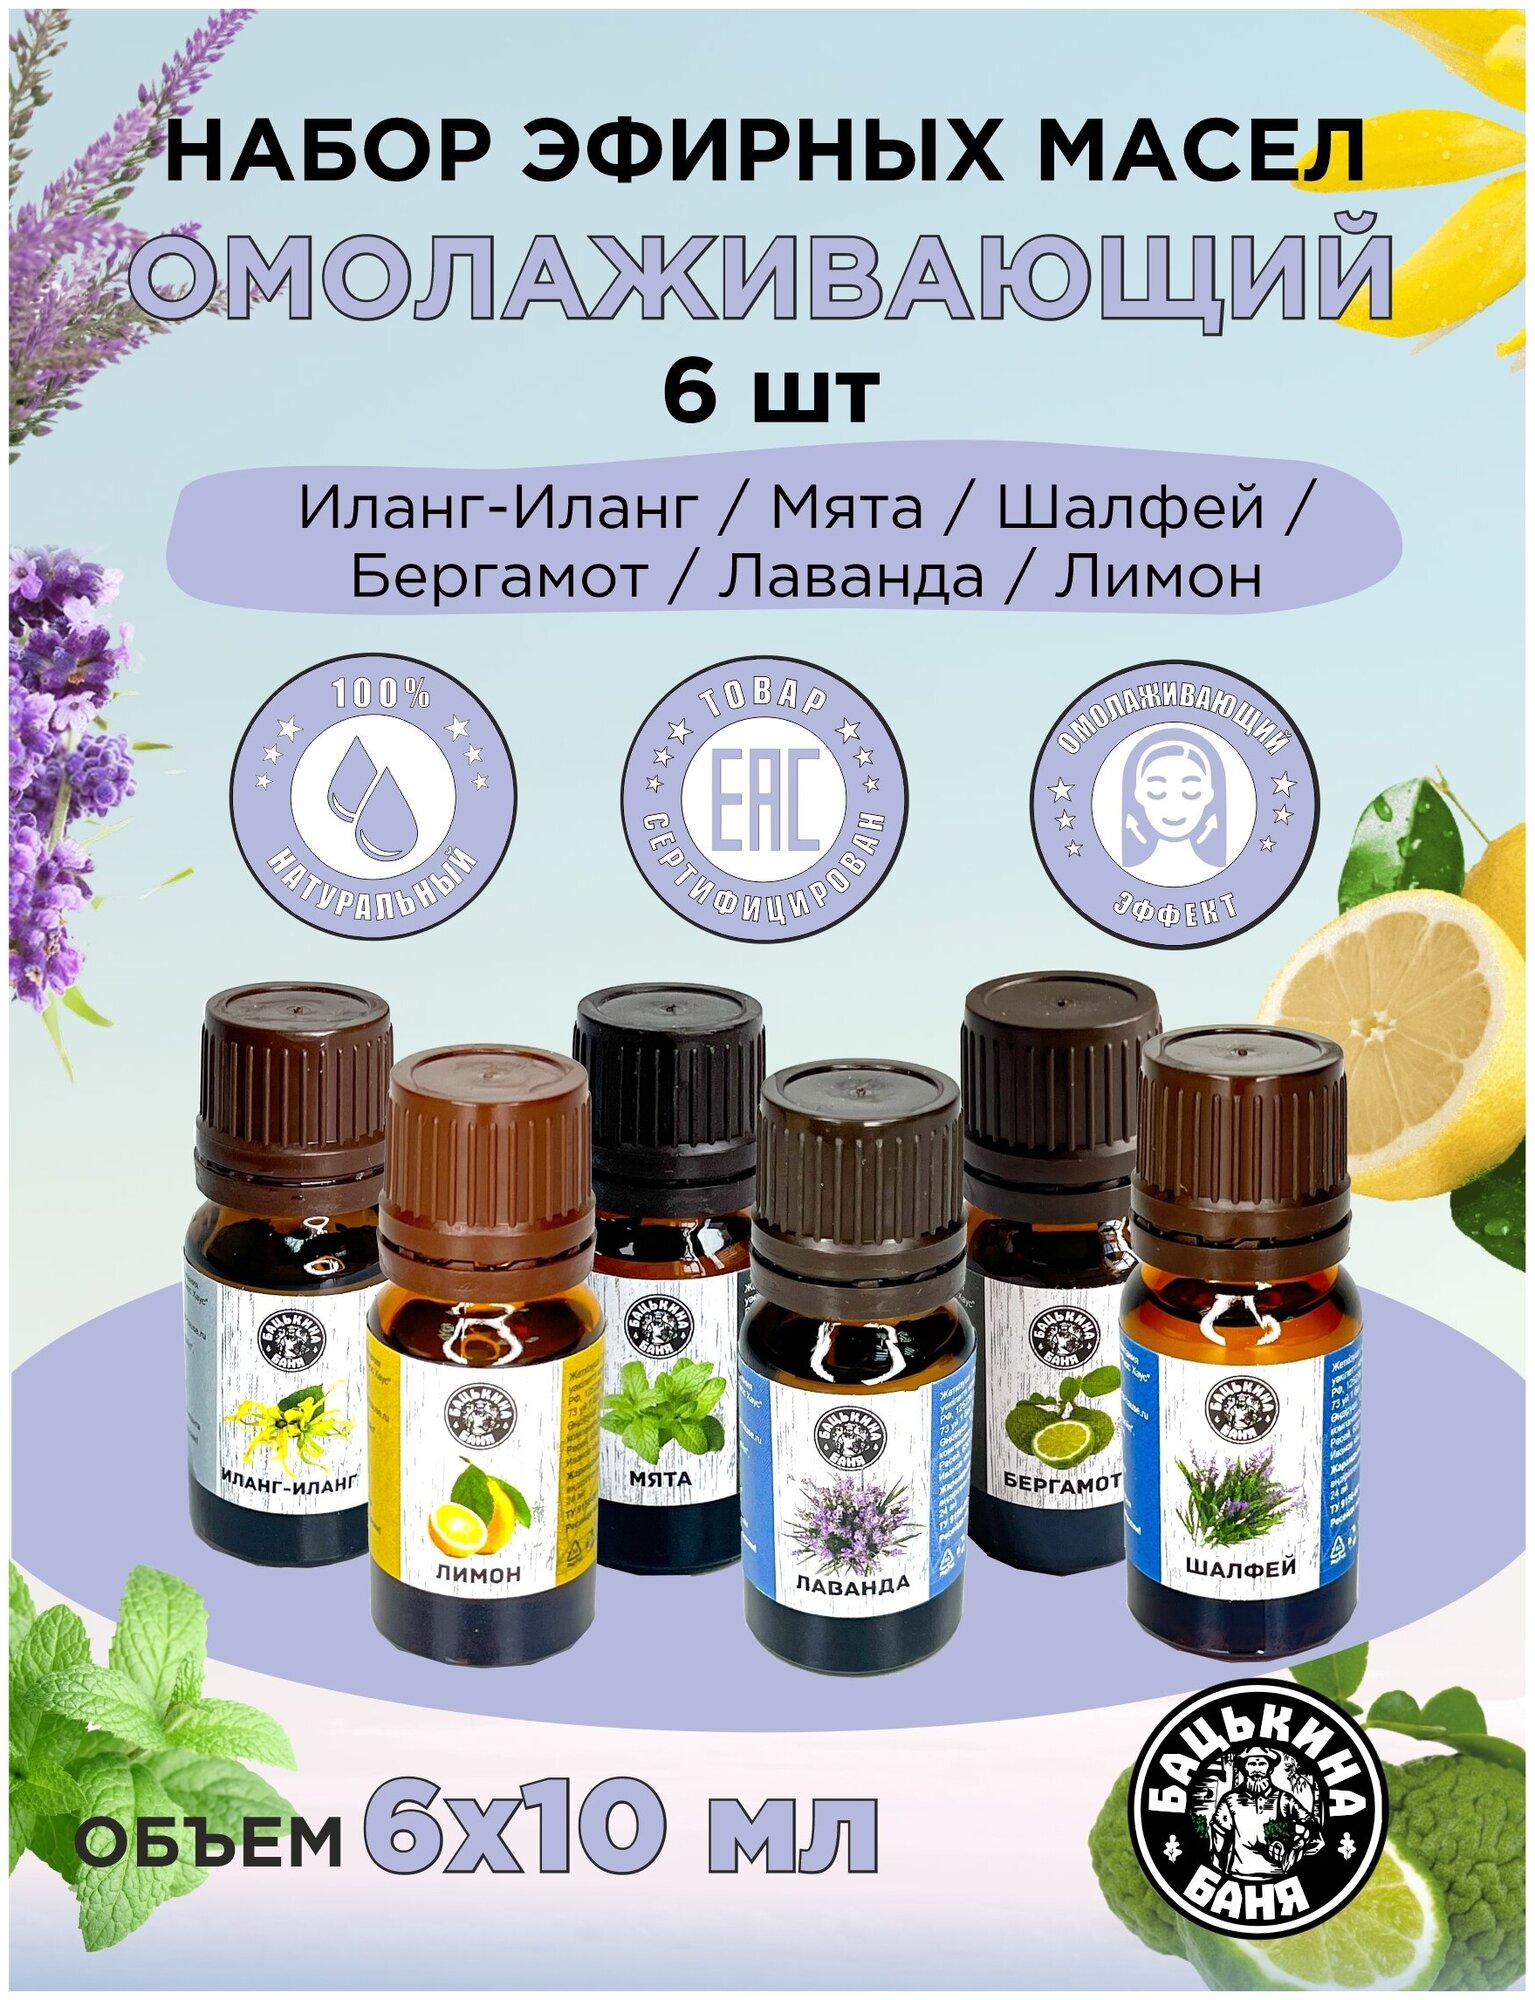 Эфирные масла натуральные для бани и сауны набор Бацькина баня ароматизатор для дома арома масла 6 шт.